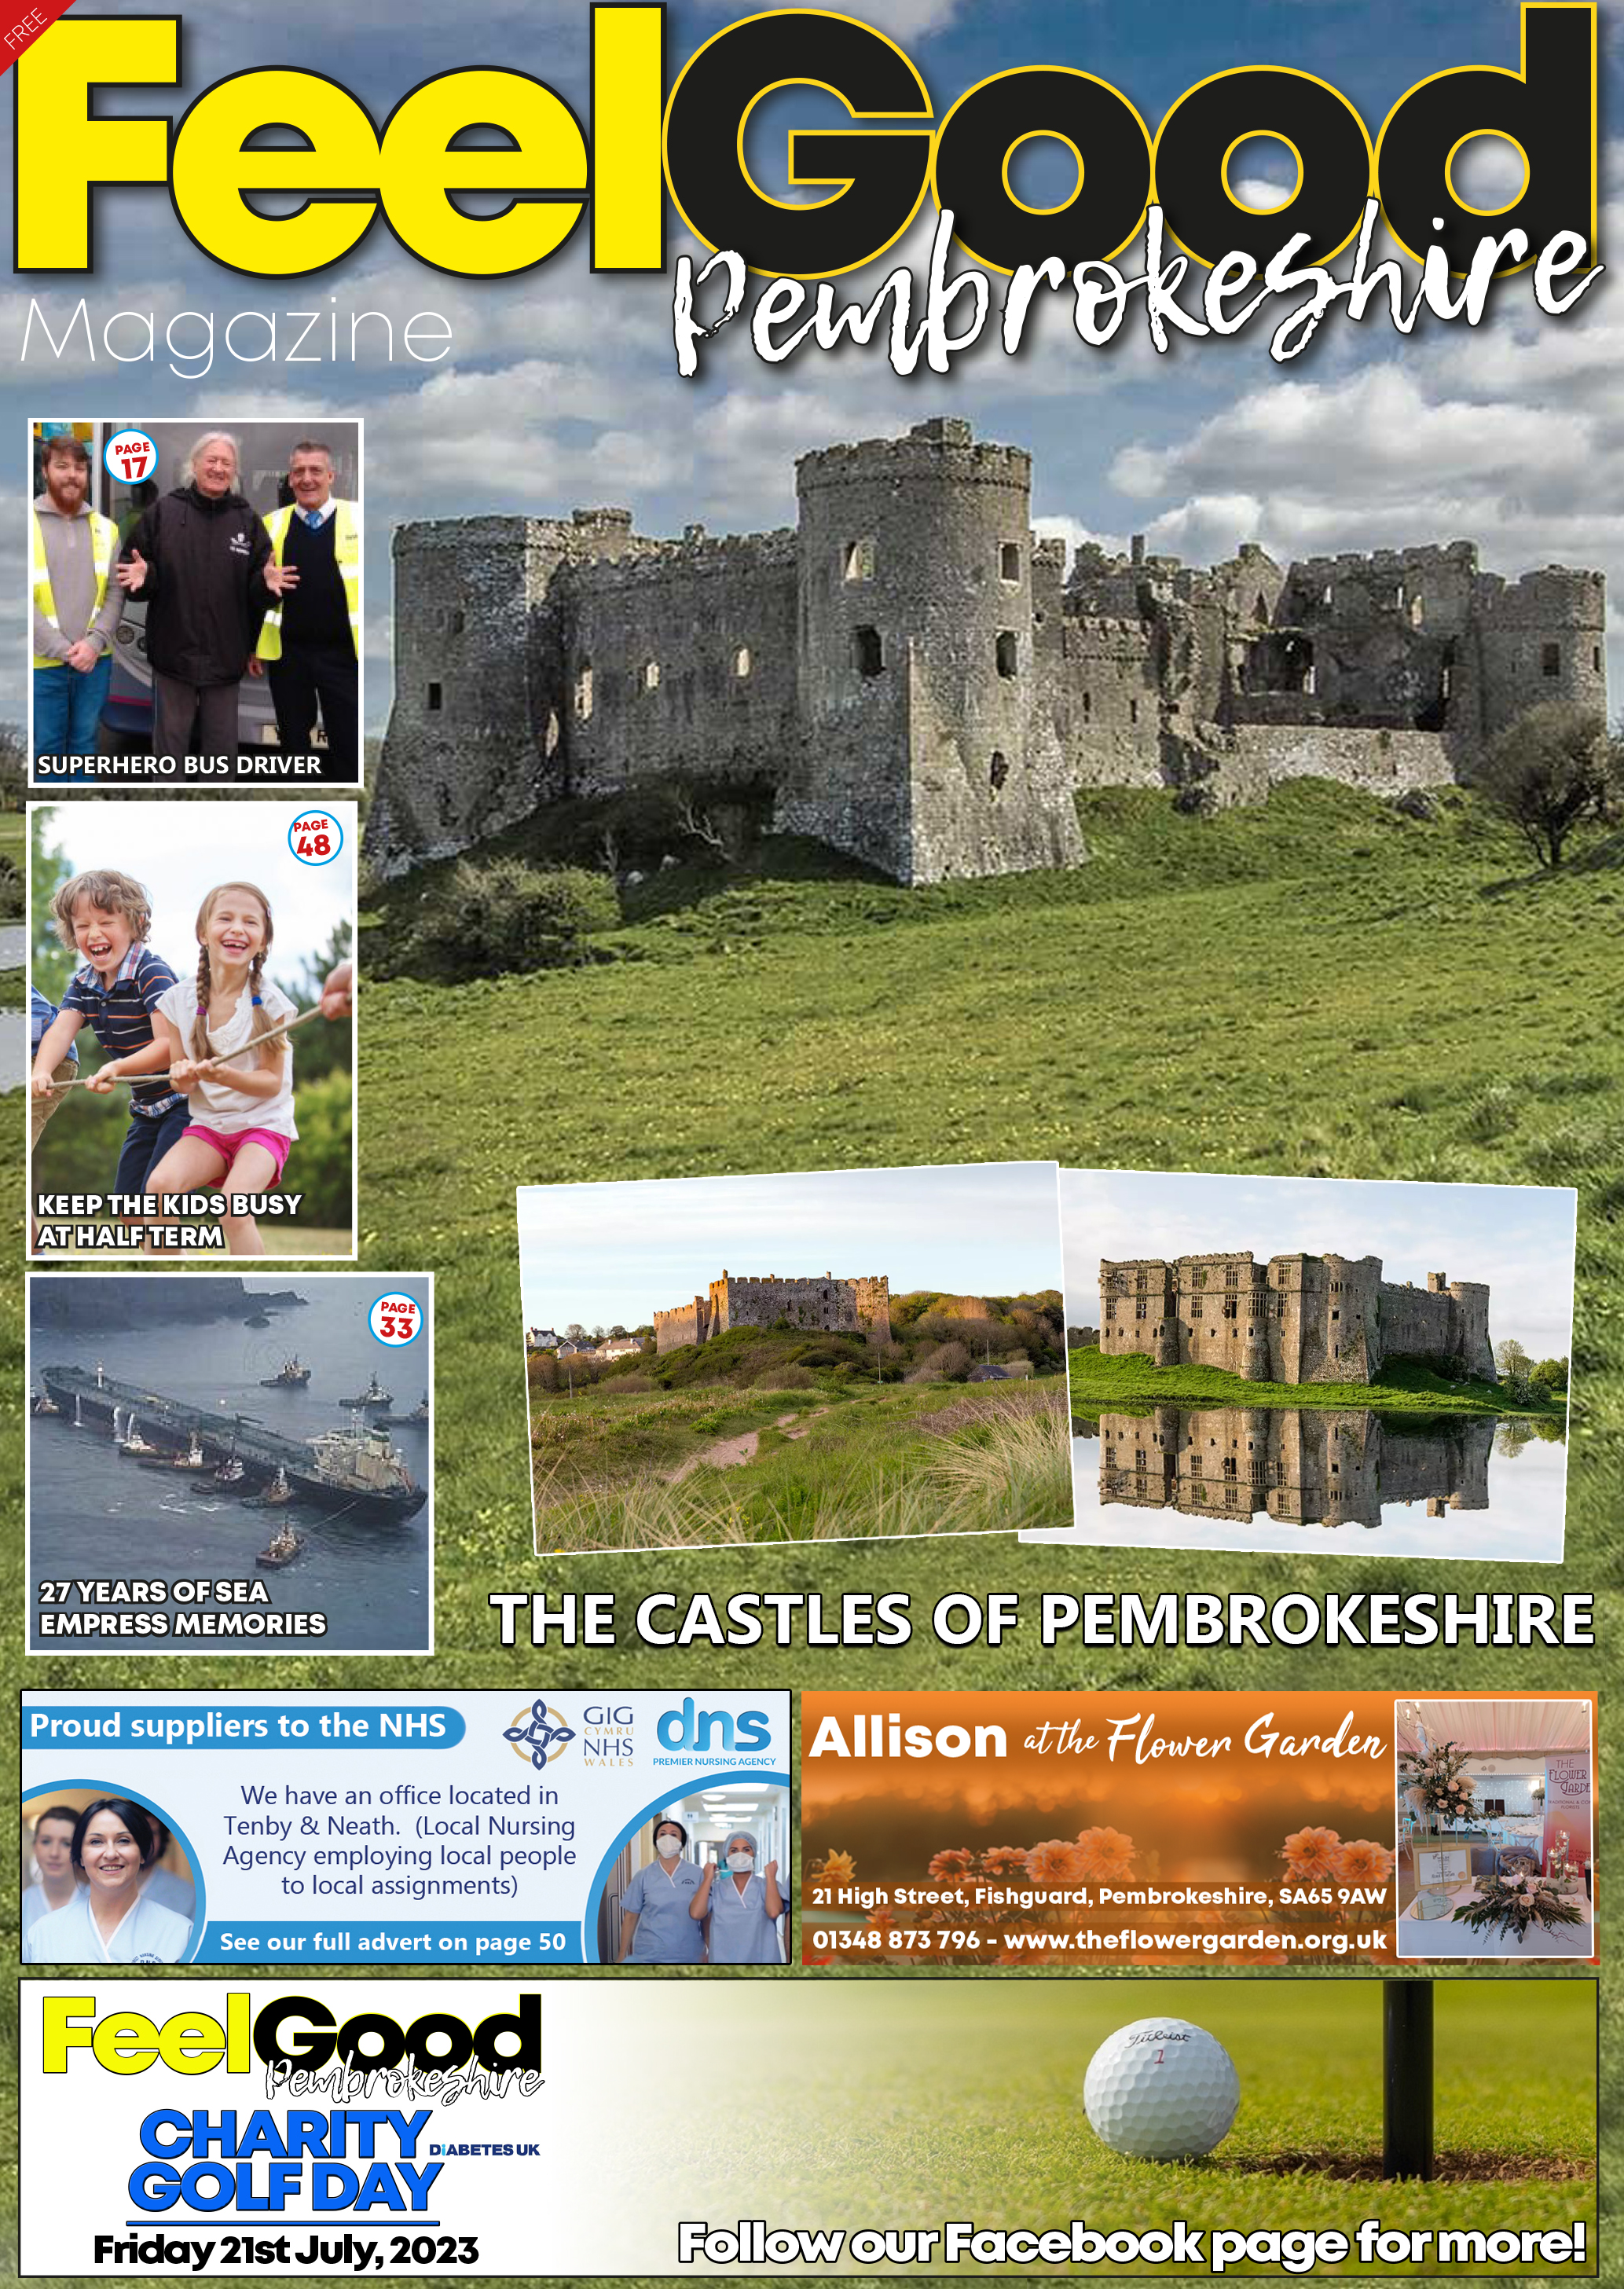 Explore Pembrokeshire's castles